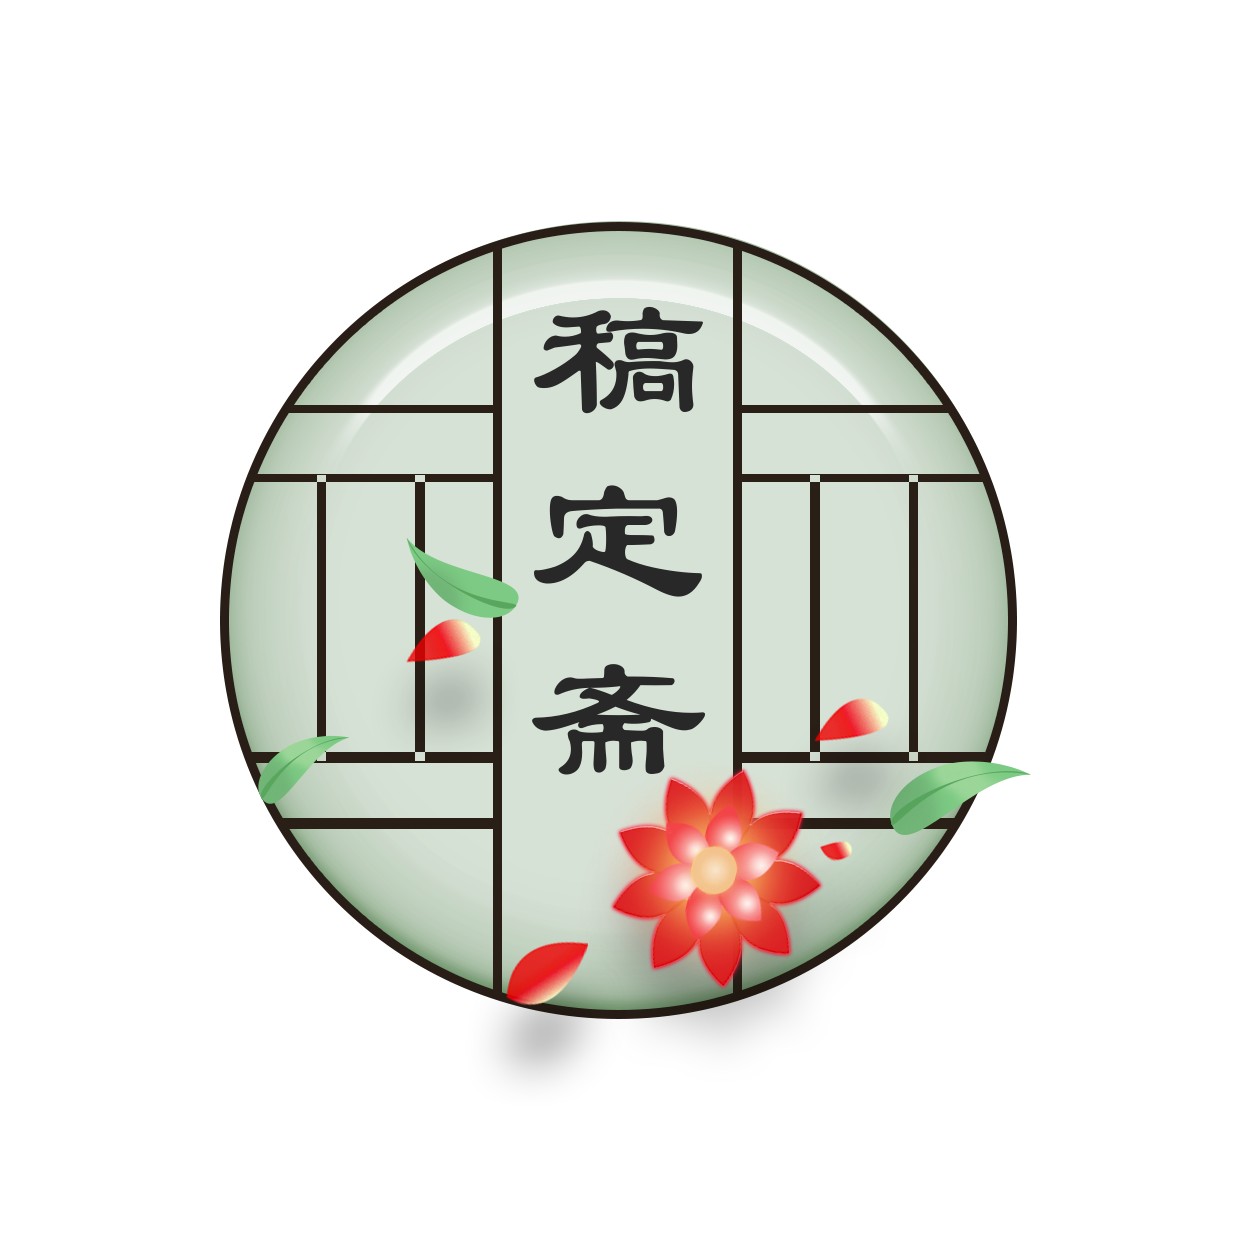 中国风创意头像Logo预览效果